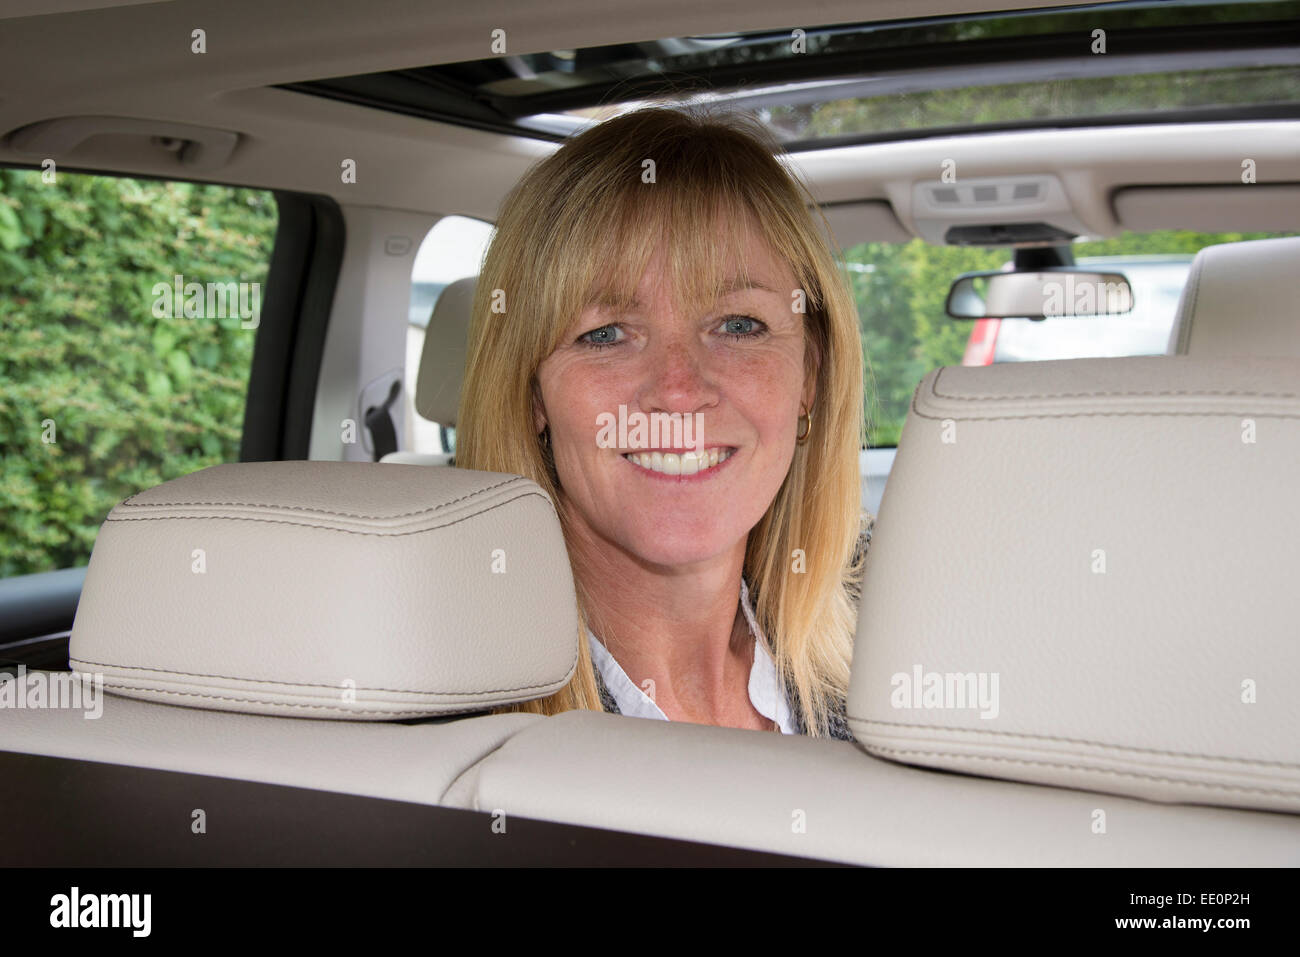 Retrato de una mujer sentada en el asiento trasero de un coche Foto de stock